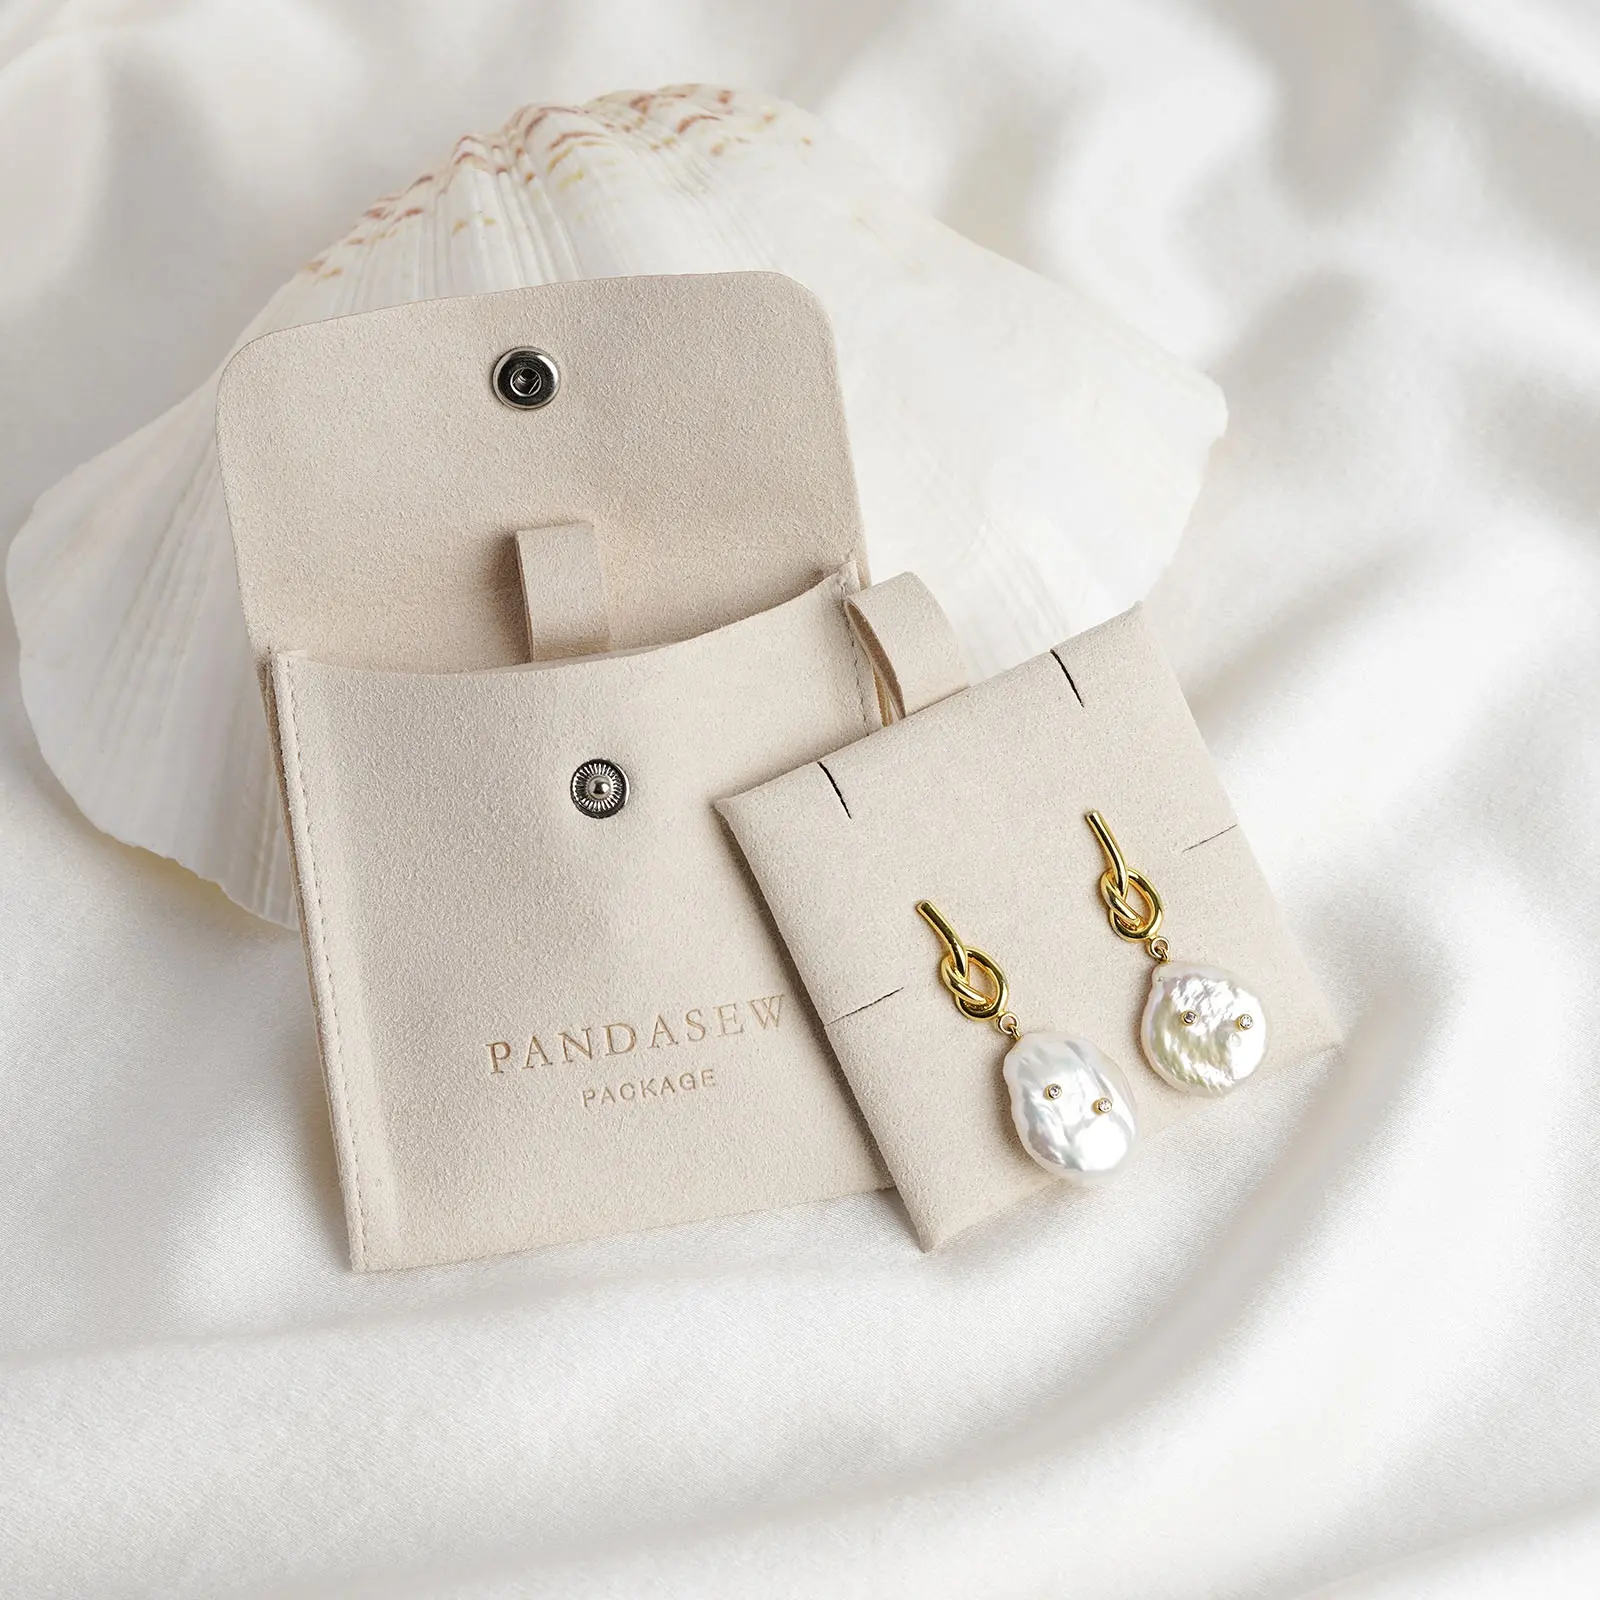 Pandasew bolsa para joias, 8x8cm, logotipo personalizado, embalagem para joias, de microfibra marfim, com botão de pressão, bolsa para inserir joias